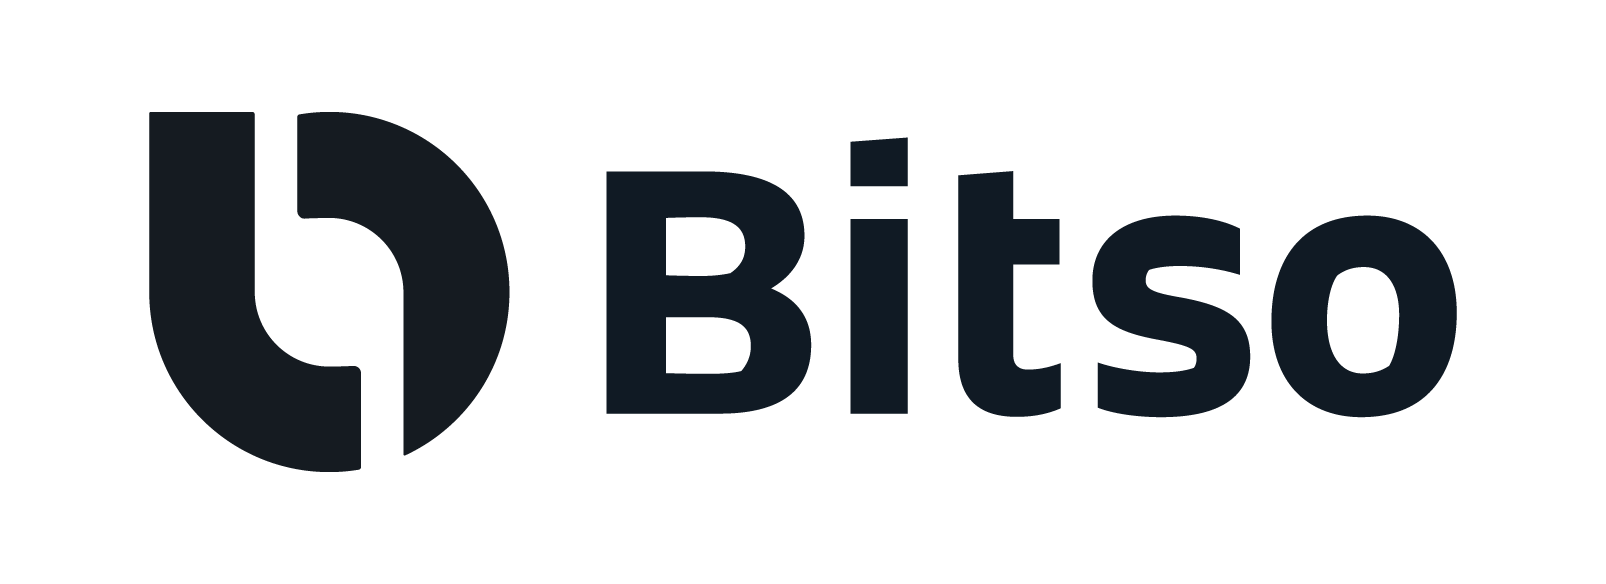 Thumbnail for File:Bitso-logo.png